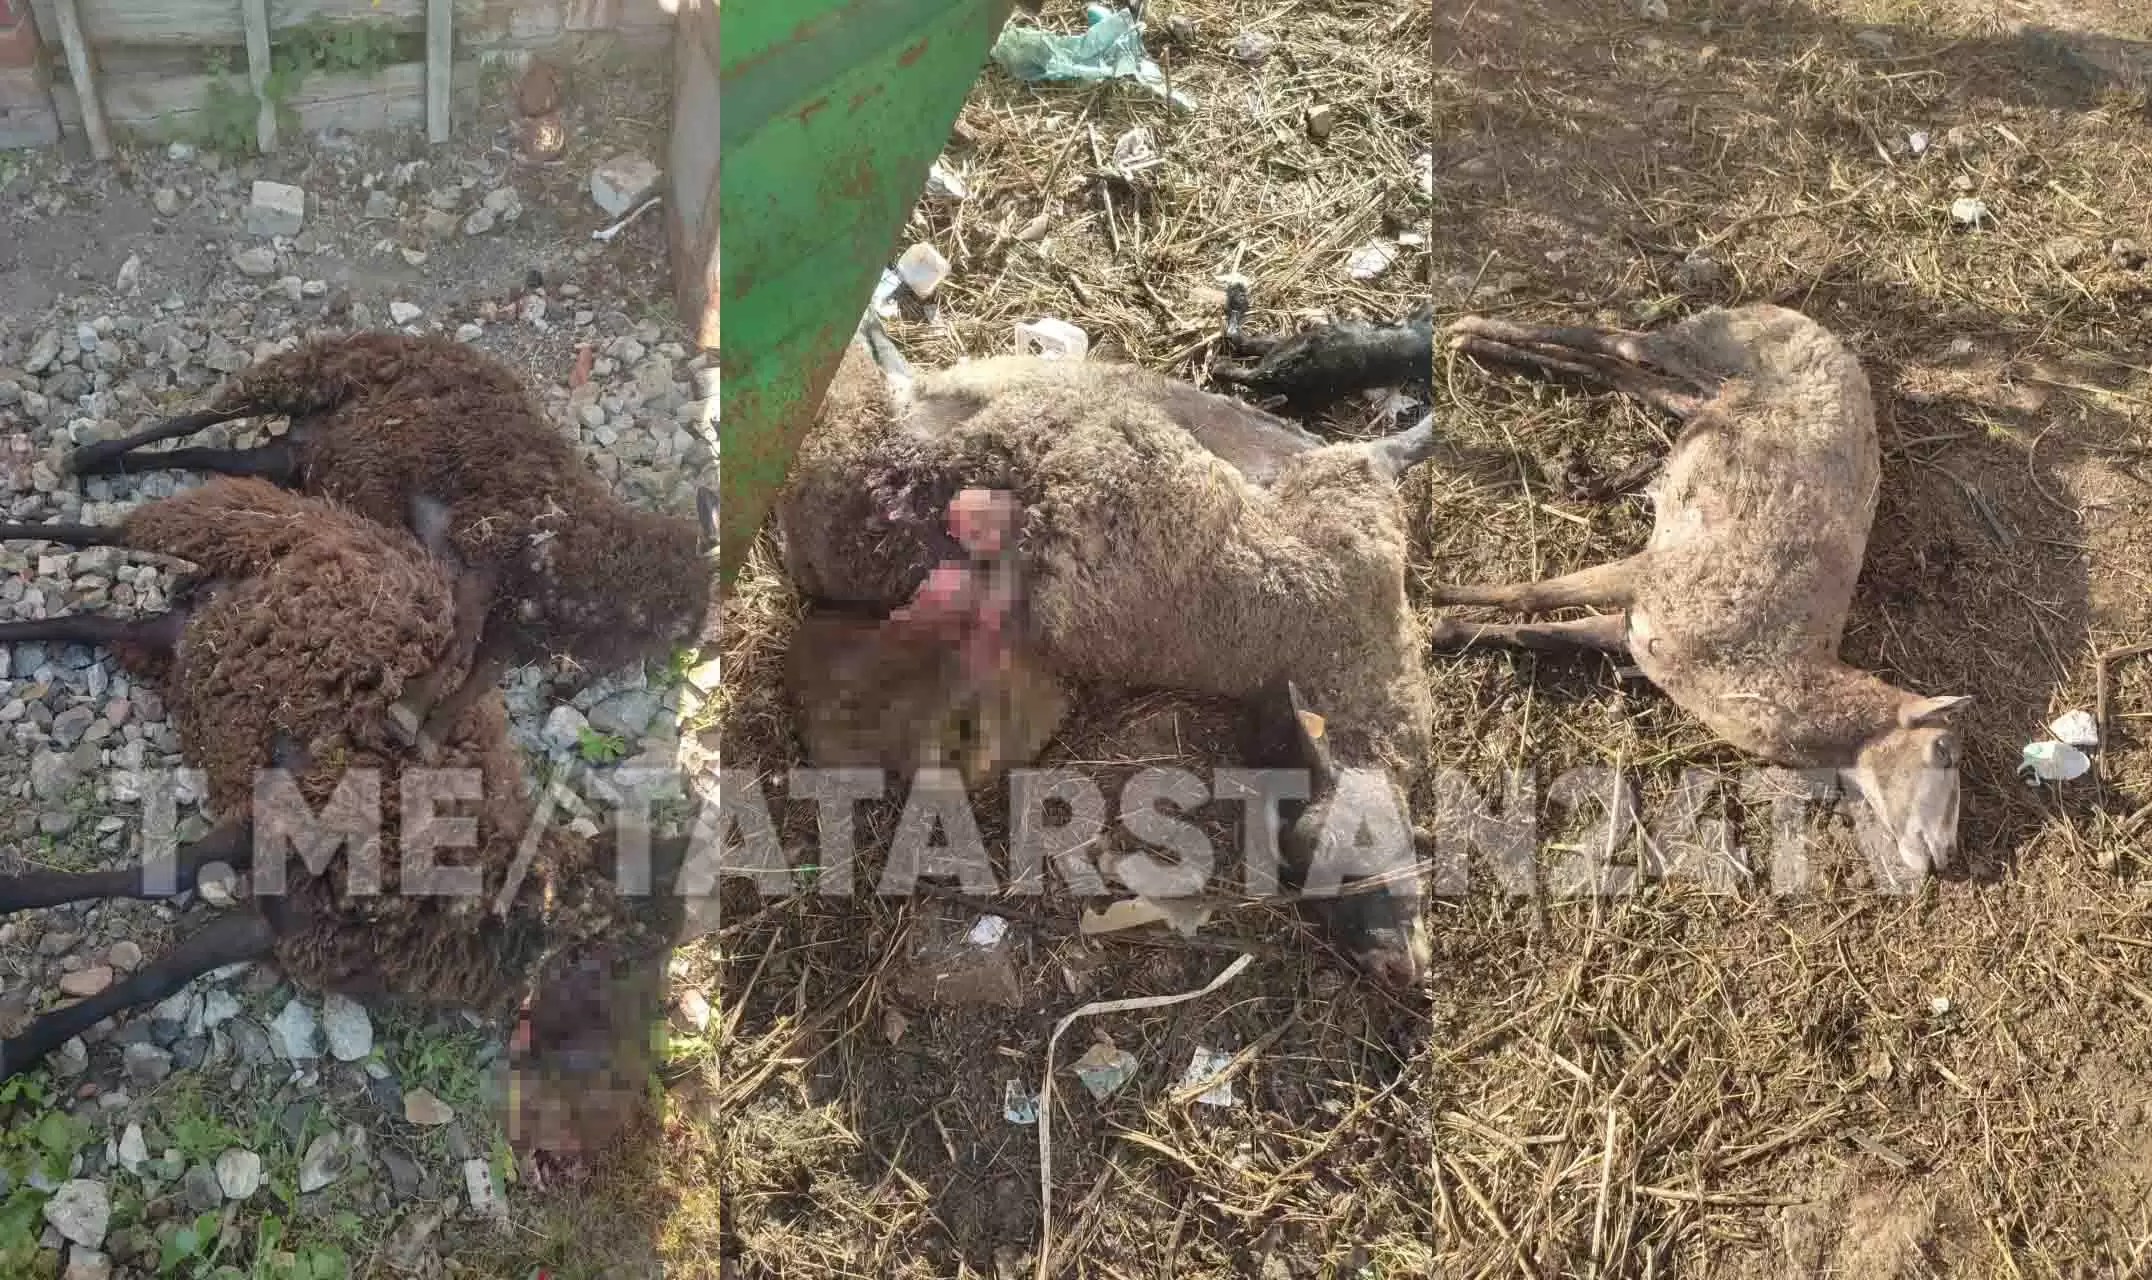 В Татарстане бездомные собаки загрызли десять овец